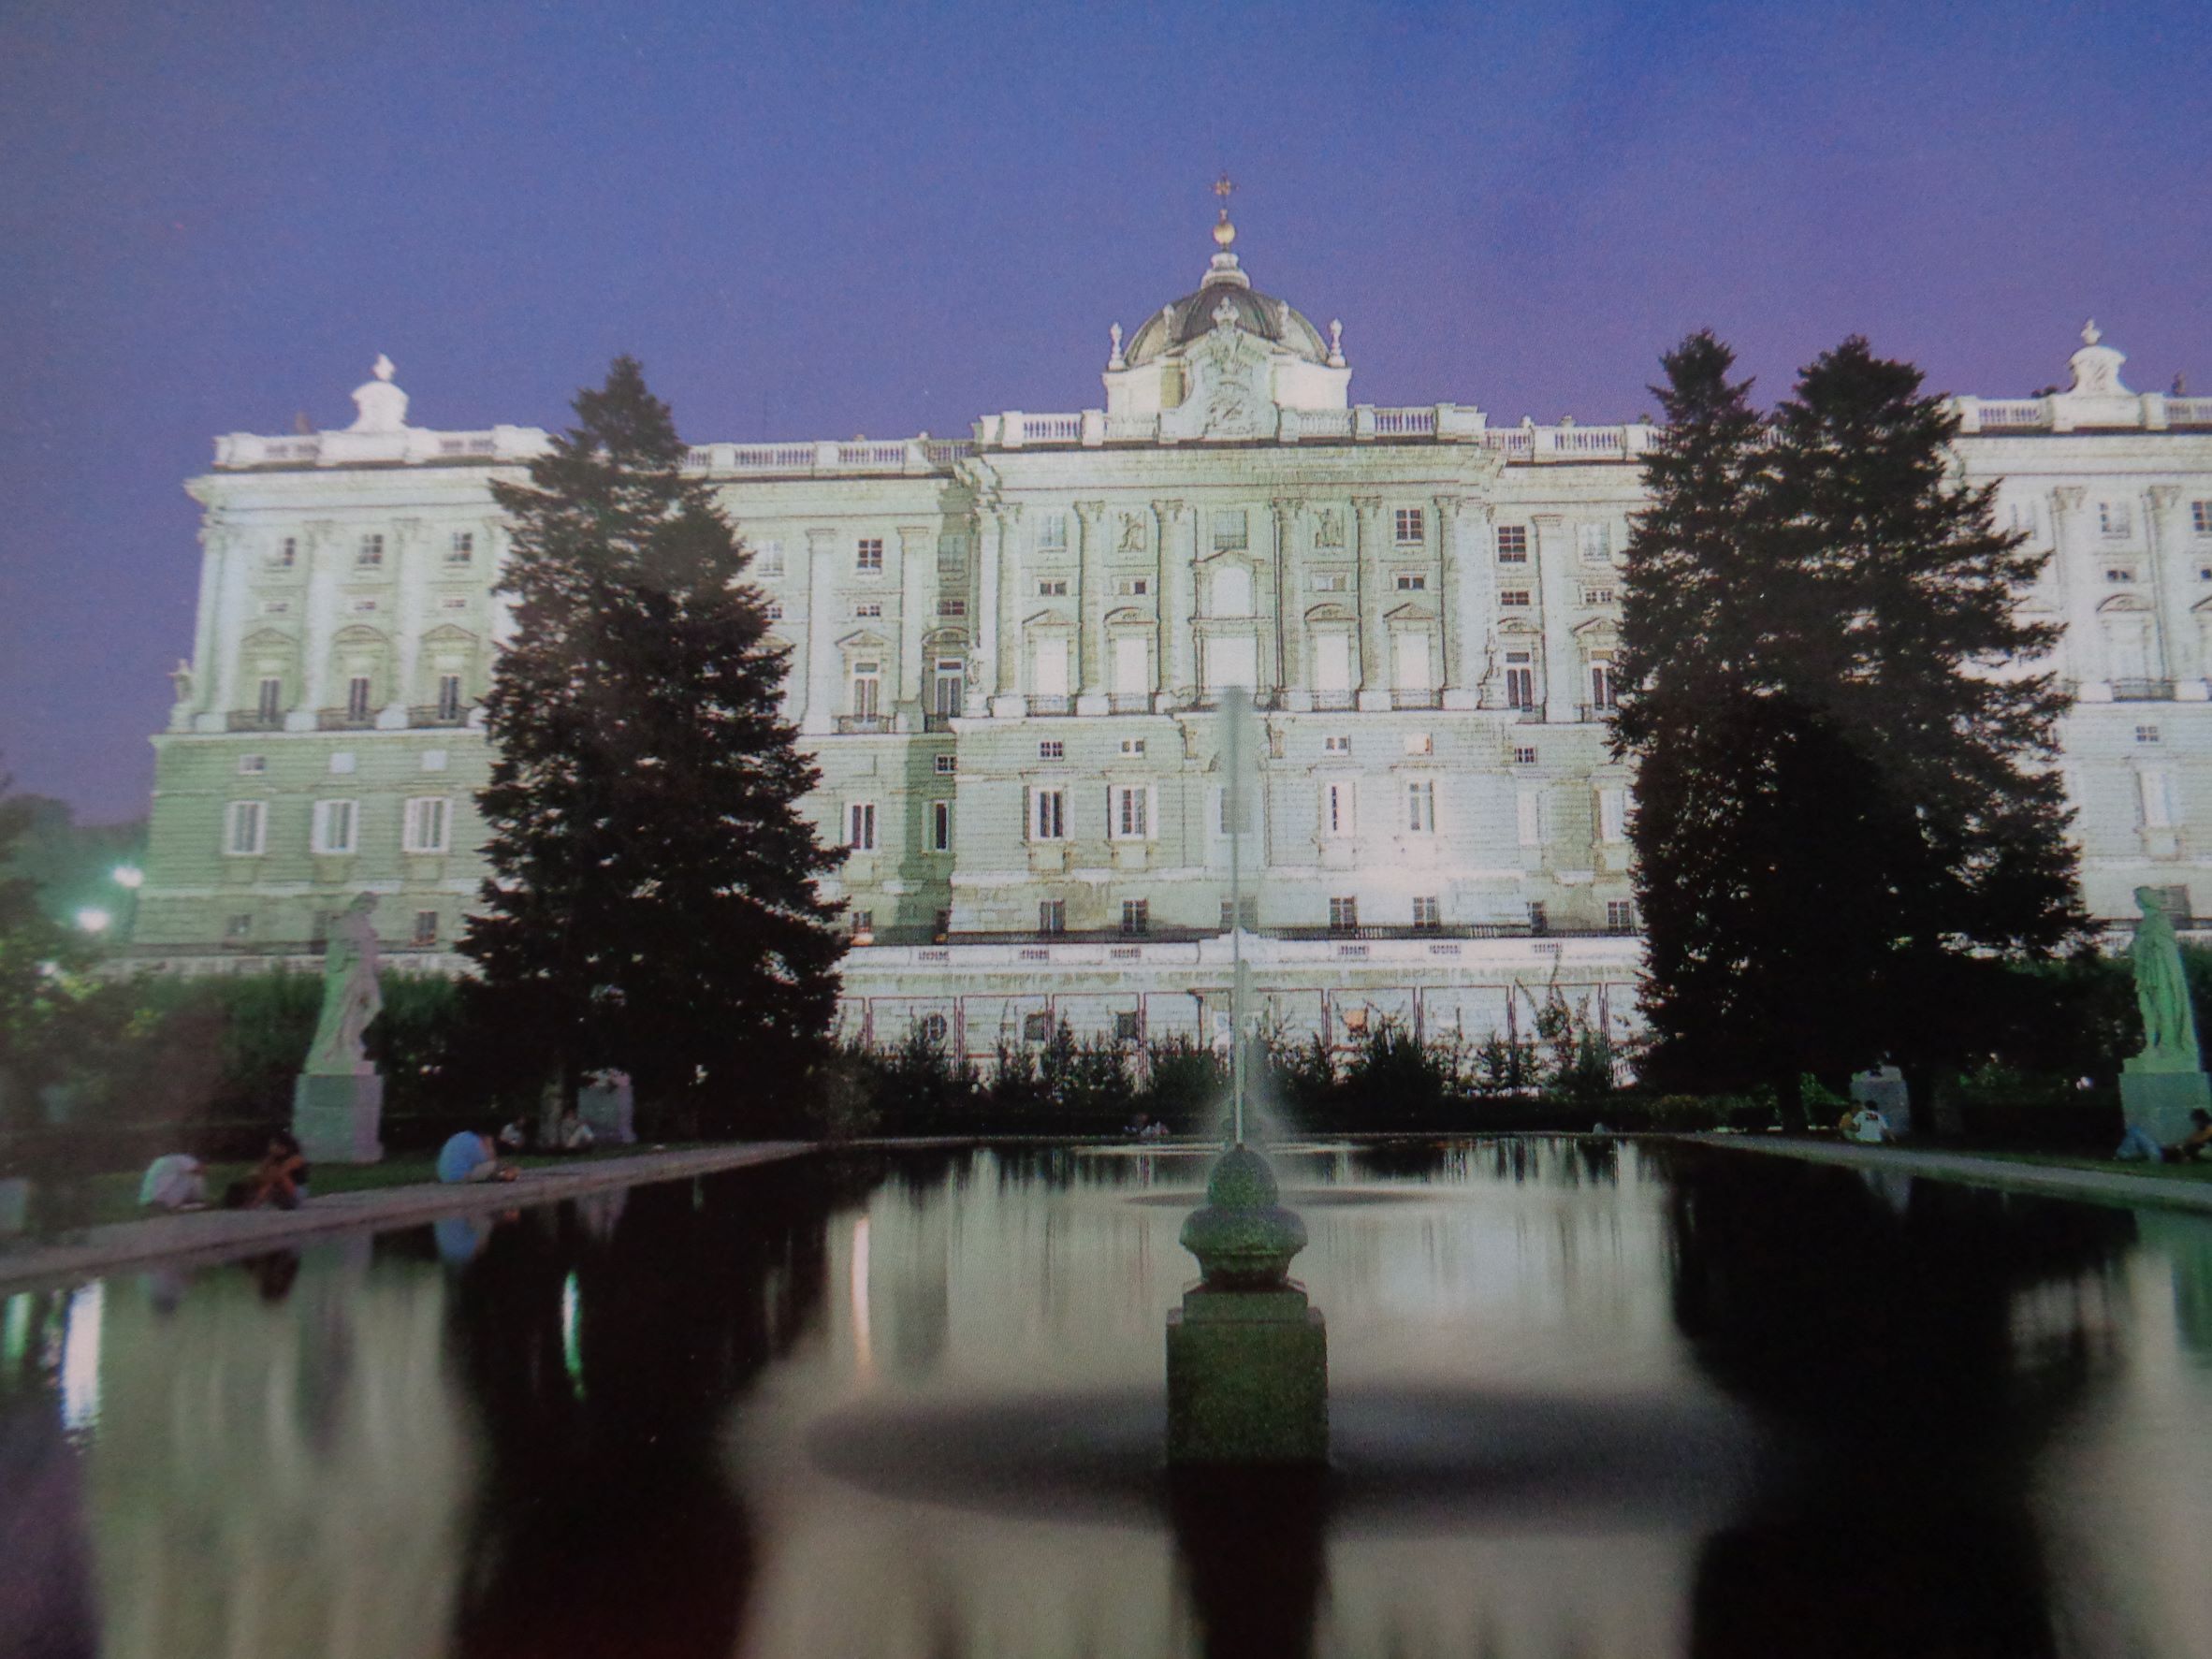 Madrid palacio real from plaza de oriente